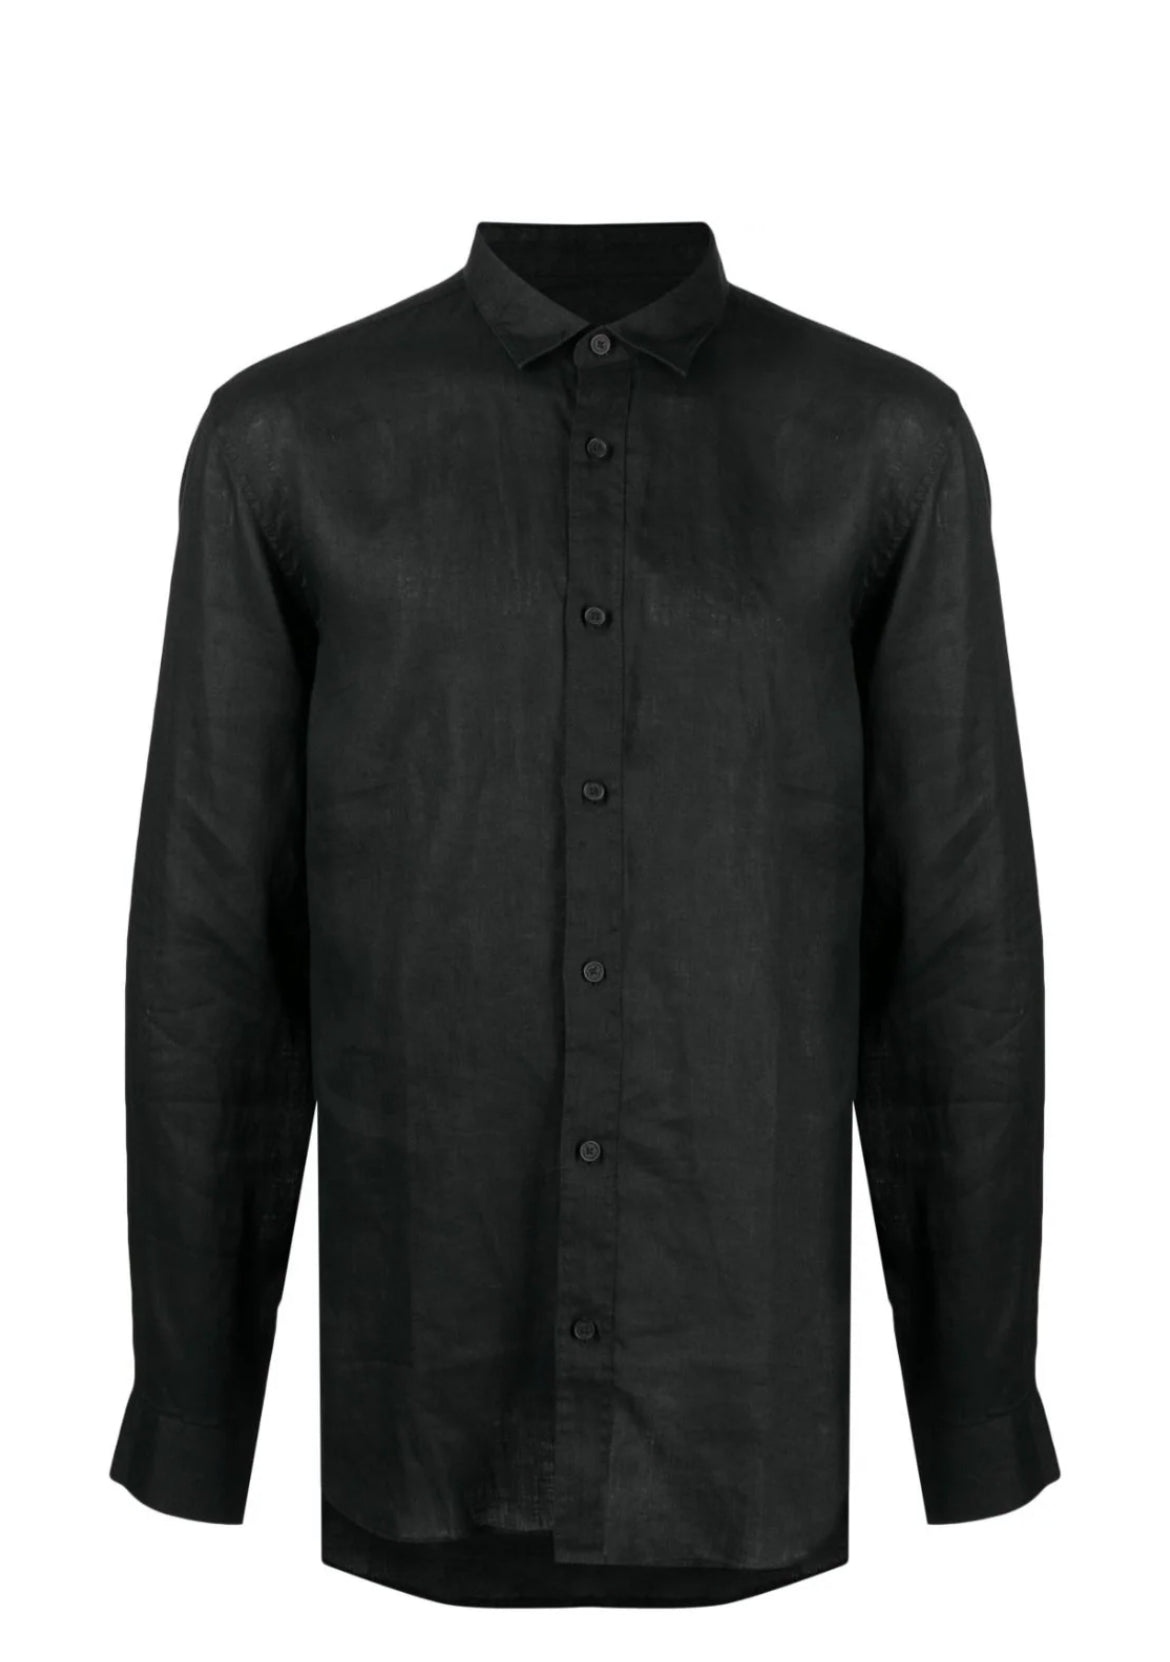 Armani Exchange Armani Exchange long-sleeve linen shirt 8nzc50